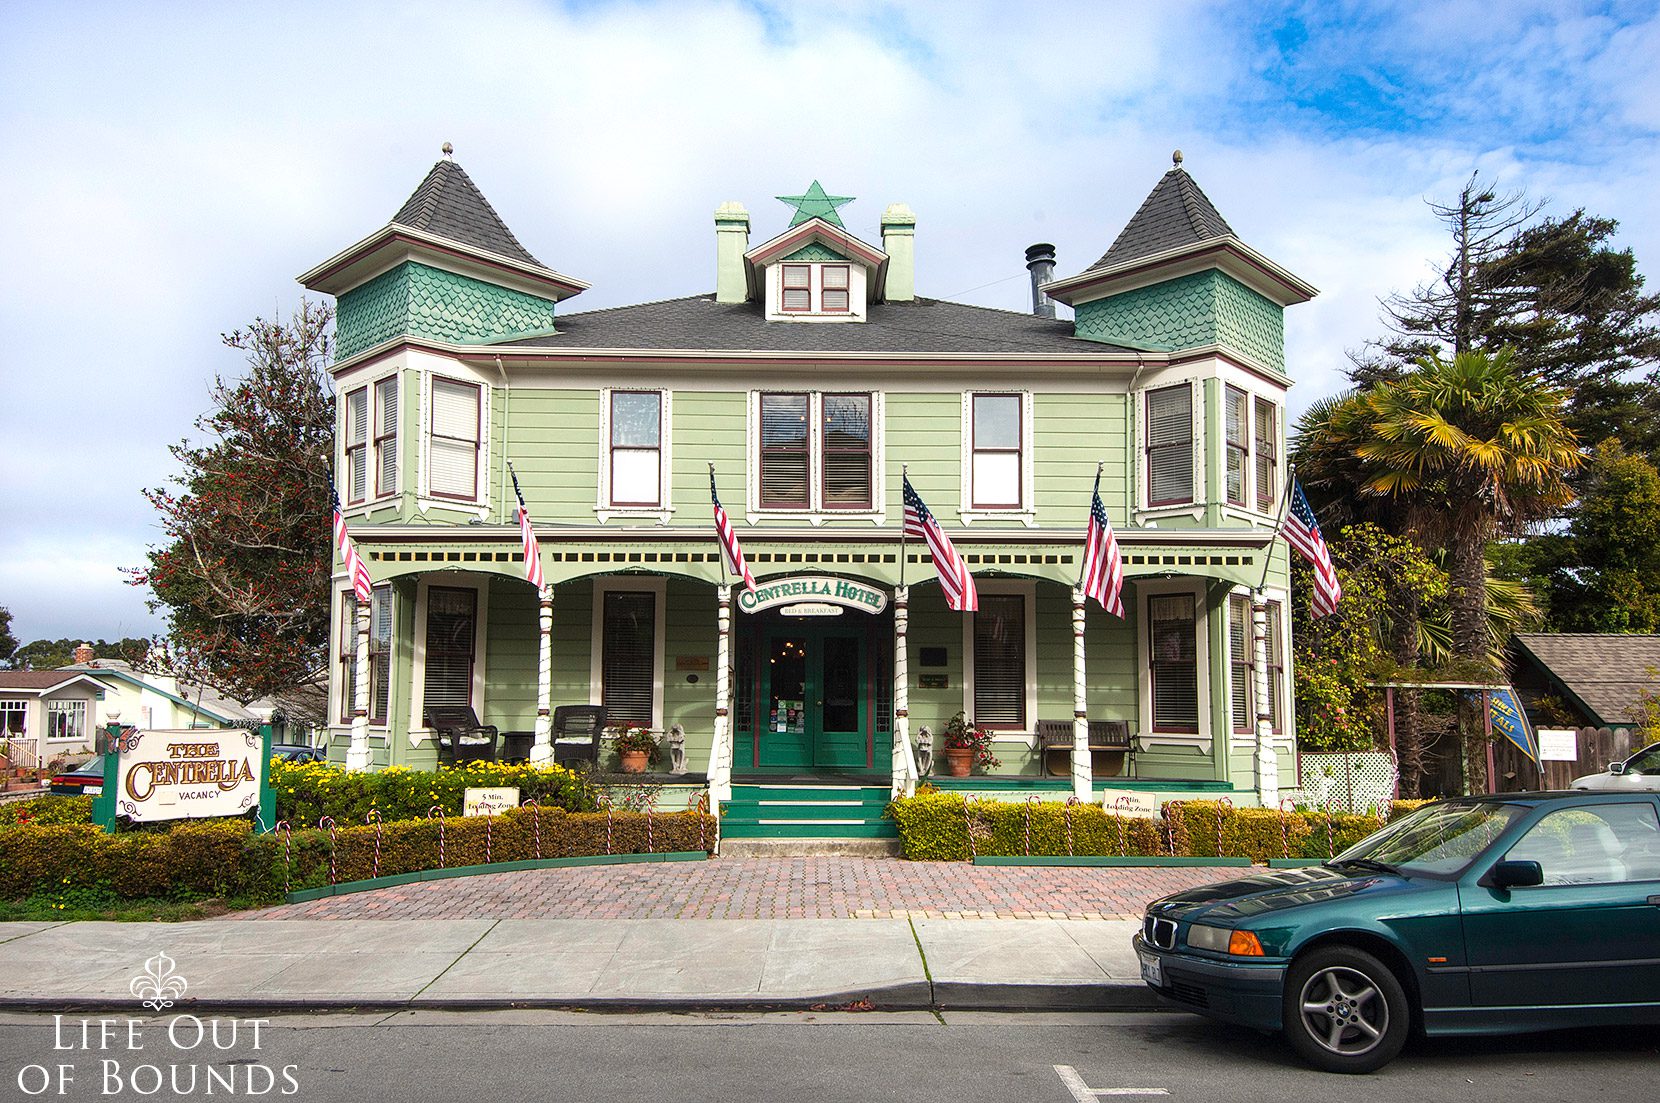 Centrella-Hotel-a-Victorian-style-BnB-in-Pacific-Grove-California